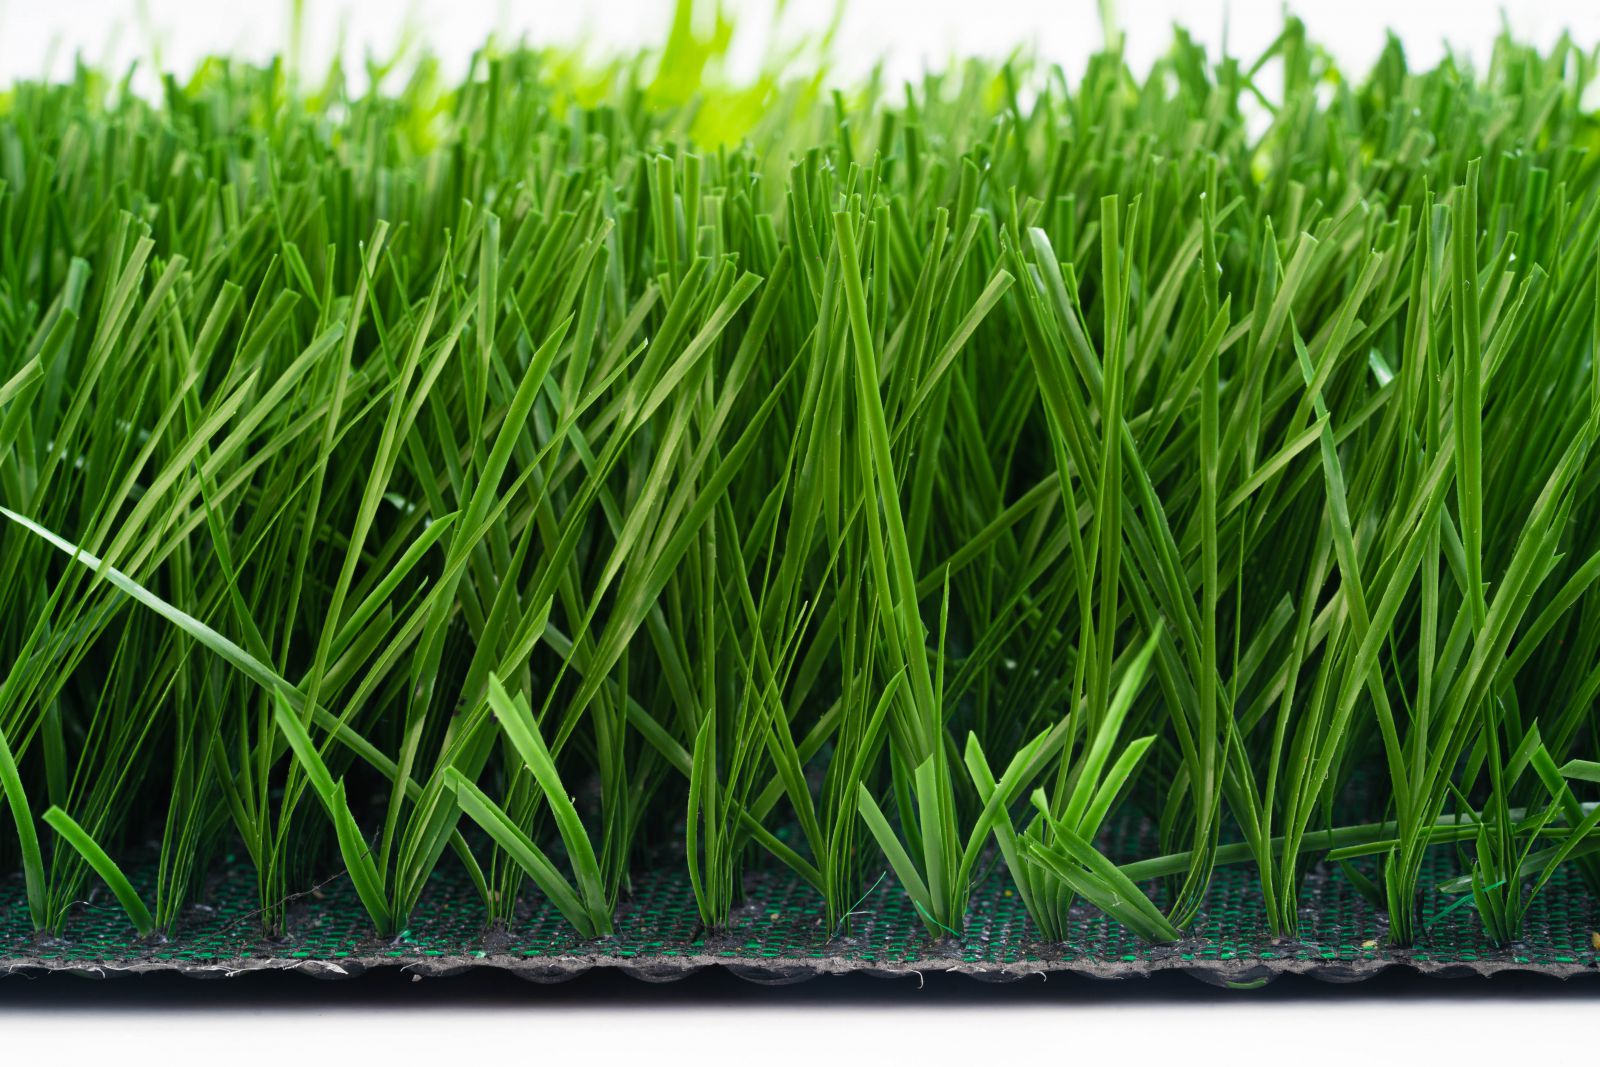 cỏ nhân tạo sân bóng đá